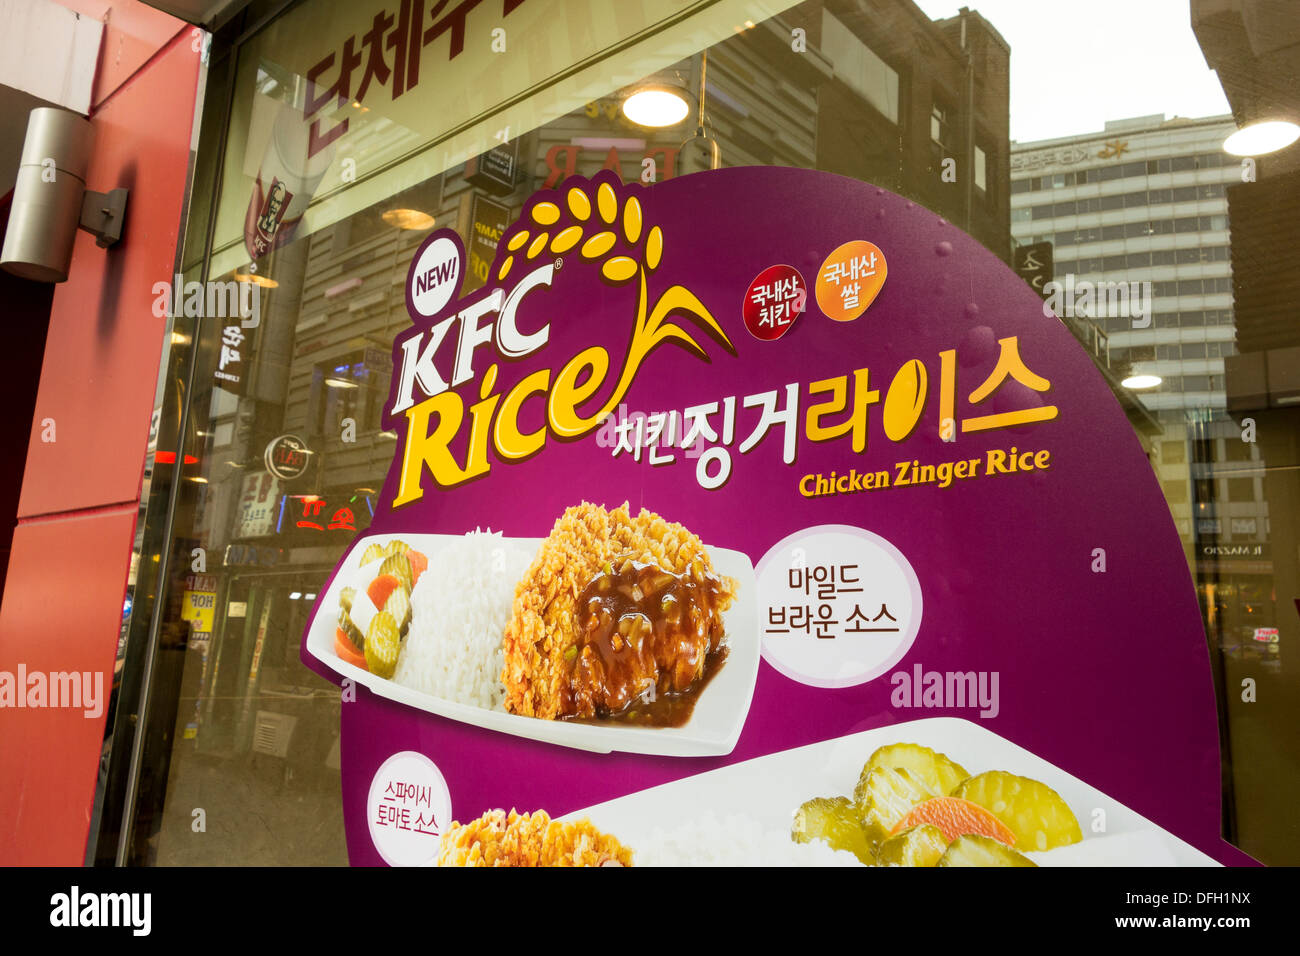 KFC in Seoul Hühnerreis Zinger Menü auf Fenster zu fördern.  Reis ist für Koreaner wichtigsten Grundnahrungsmittel. Stockfoto